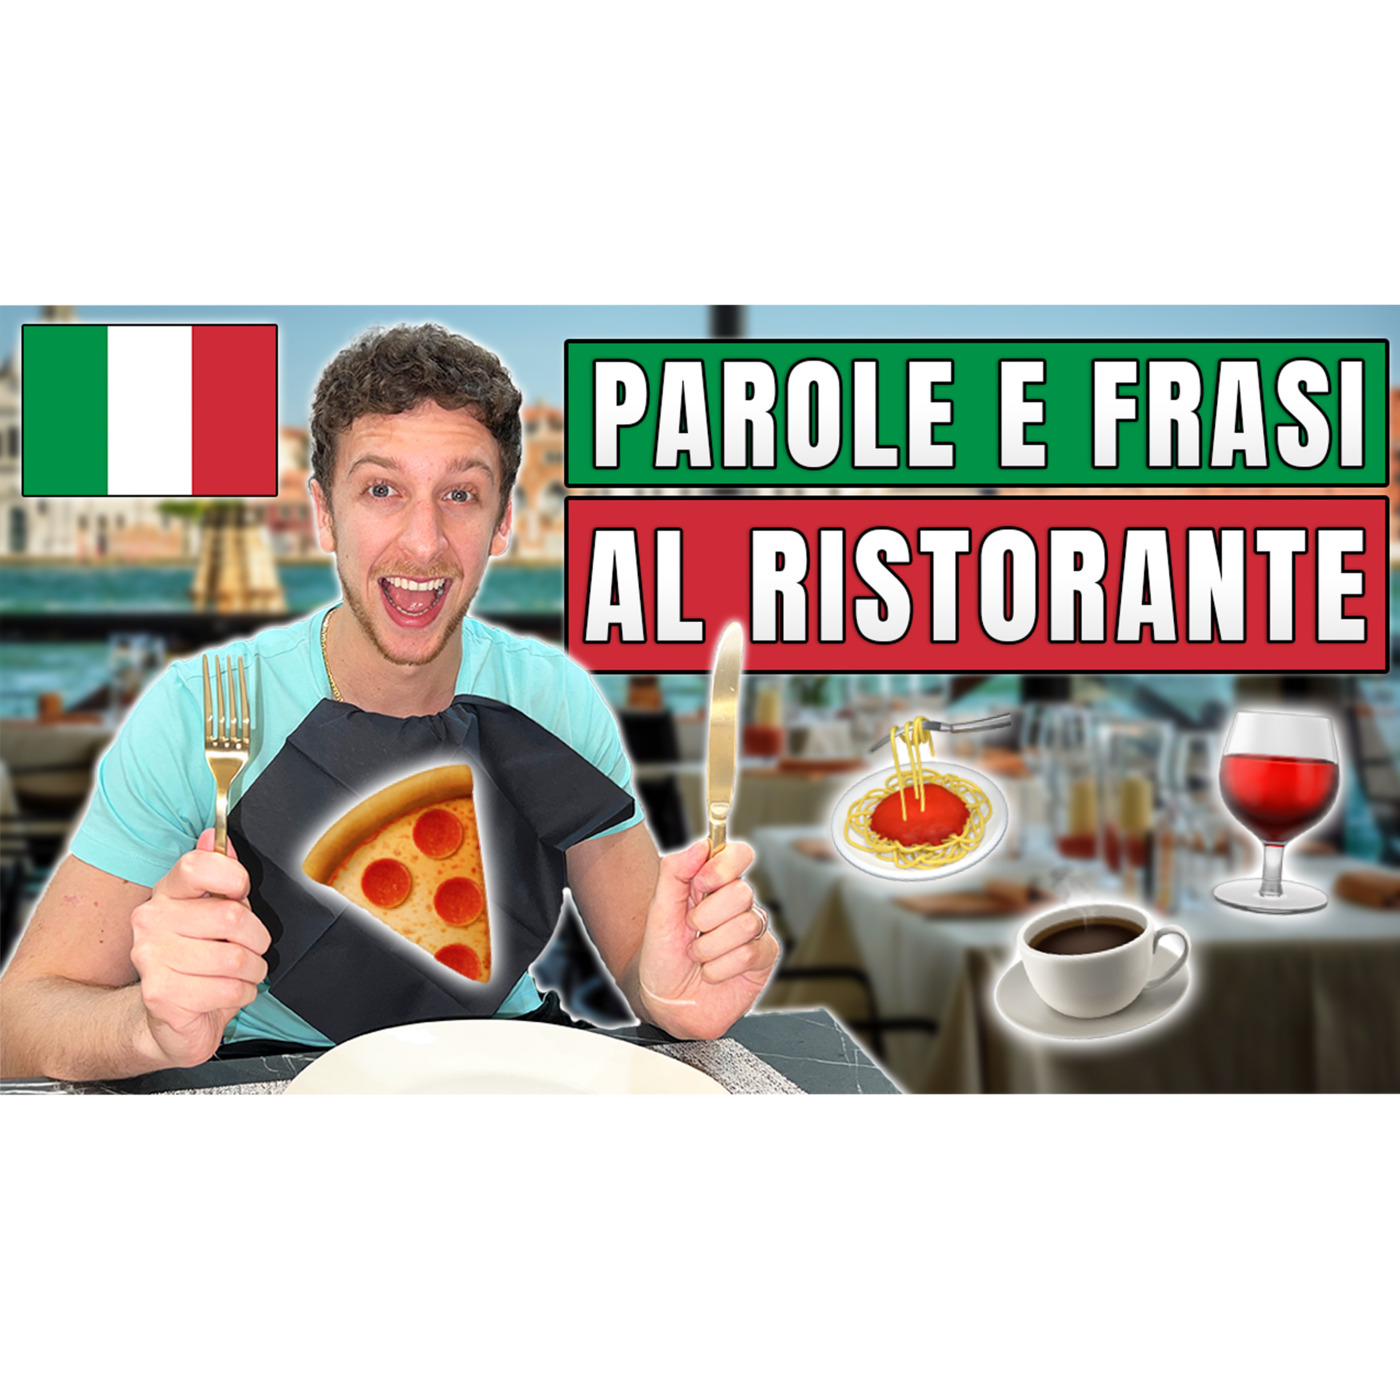 Episode 526: VOCABOLARIO ITALIANO: Parole E Frasi Da Usare Al Ristorante | Imparare l’Italiano